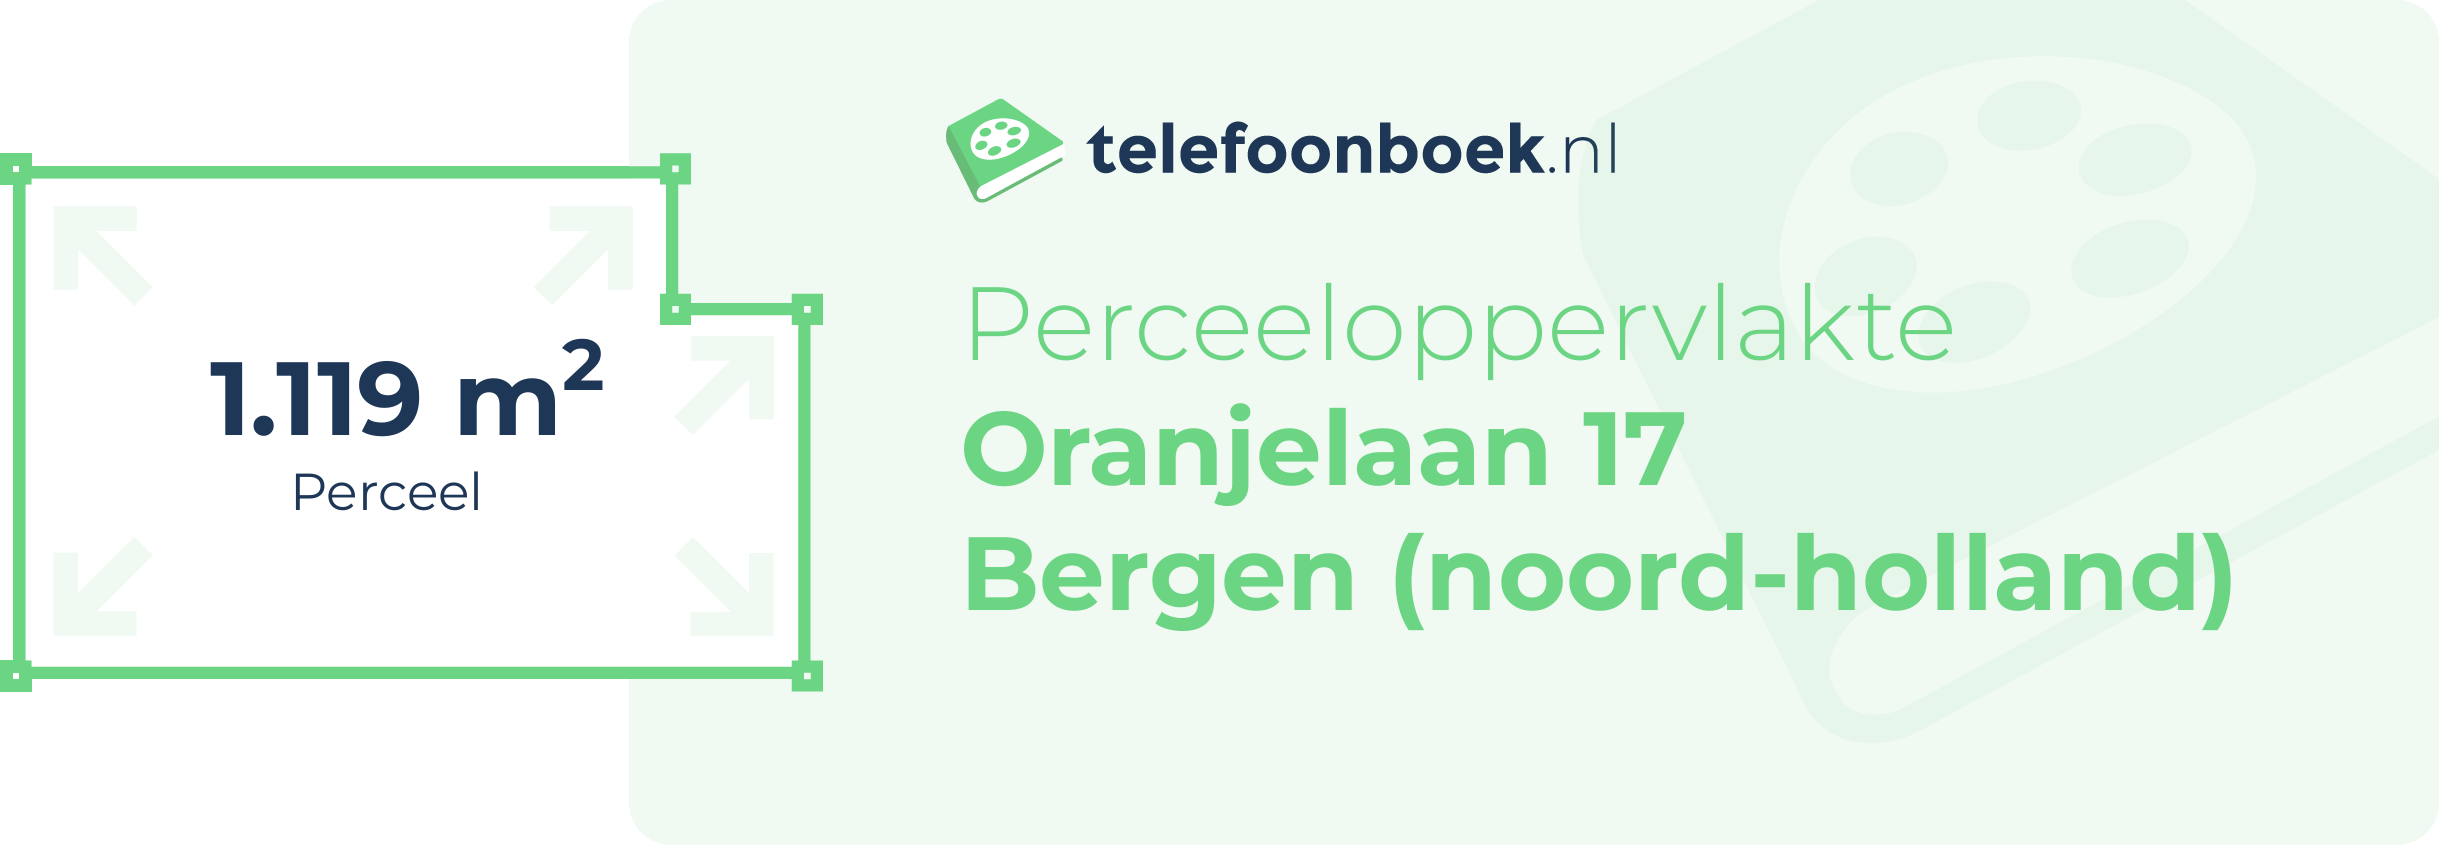 Perceeloppervlakte Oranjelaan 17 Bergen (Noord-Holland)